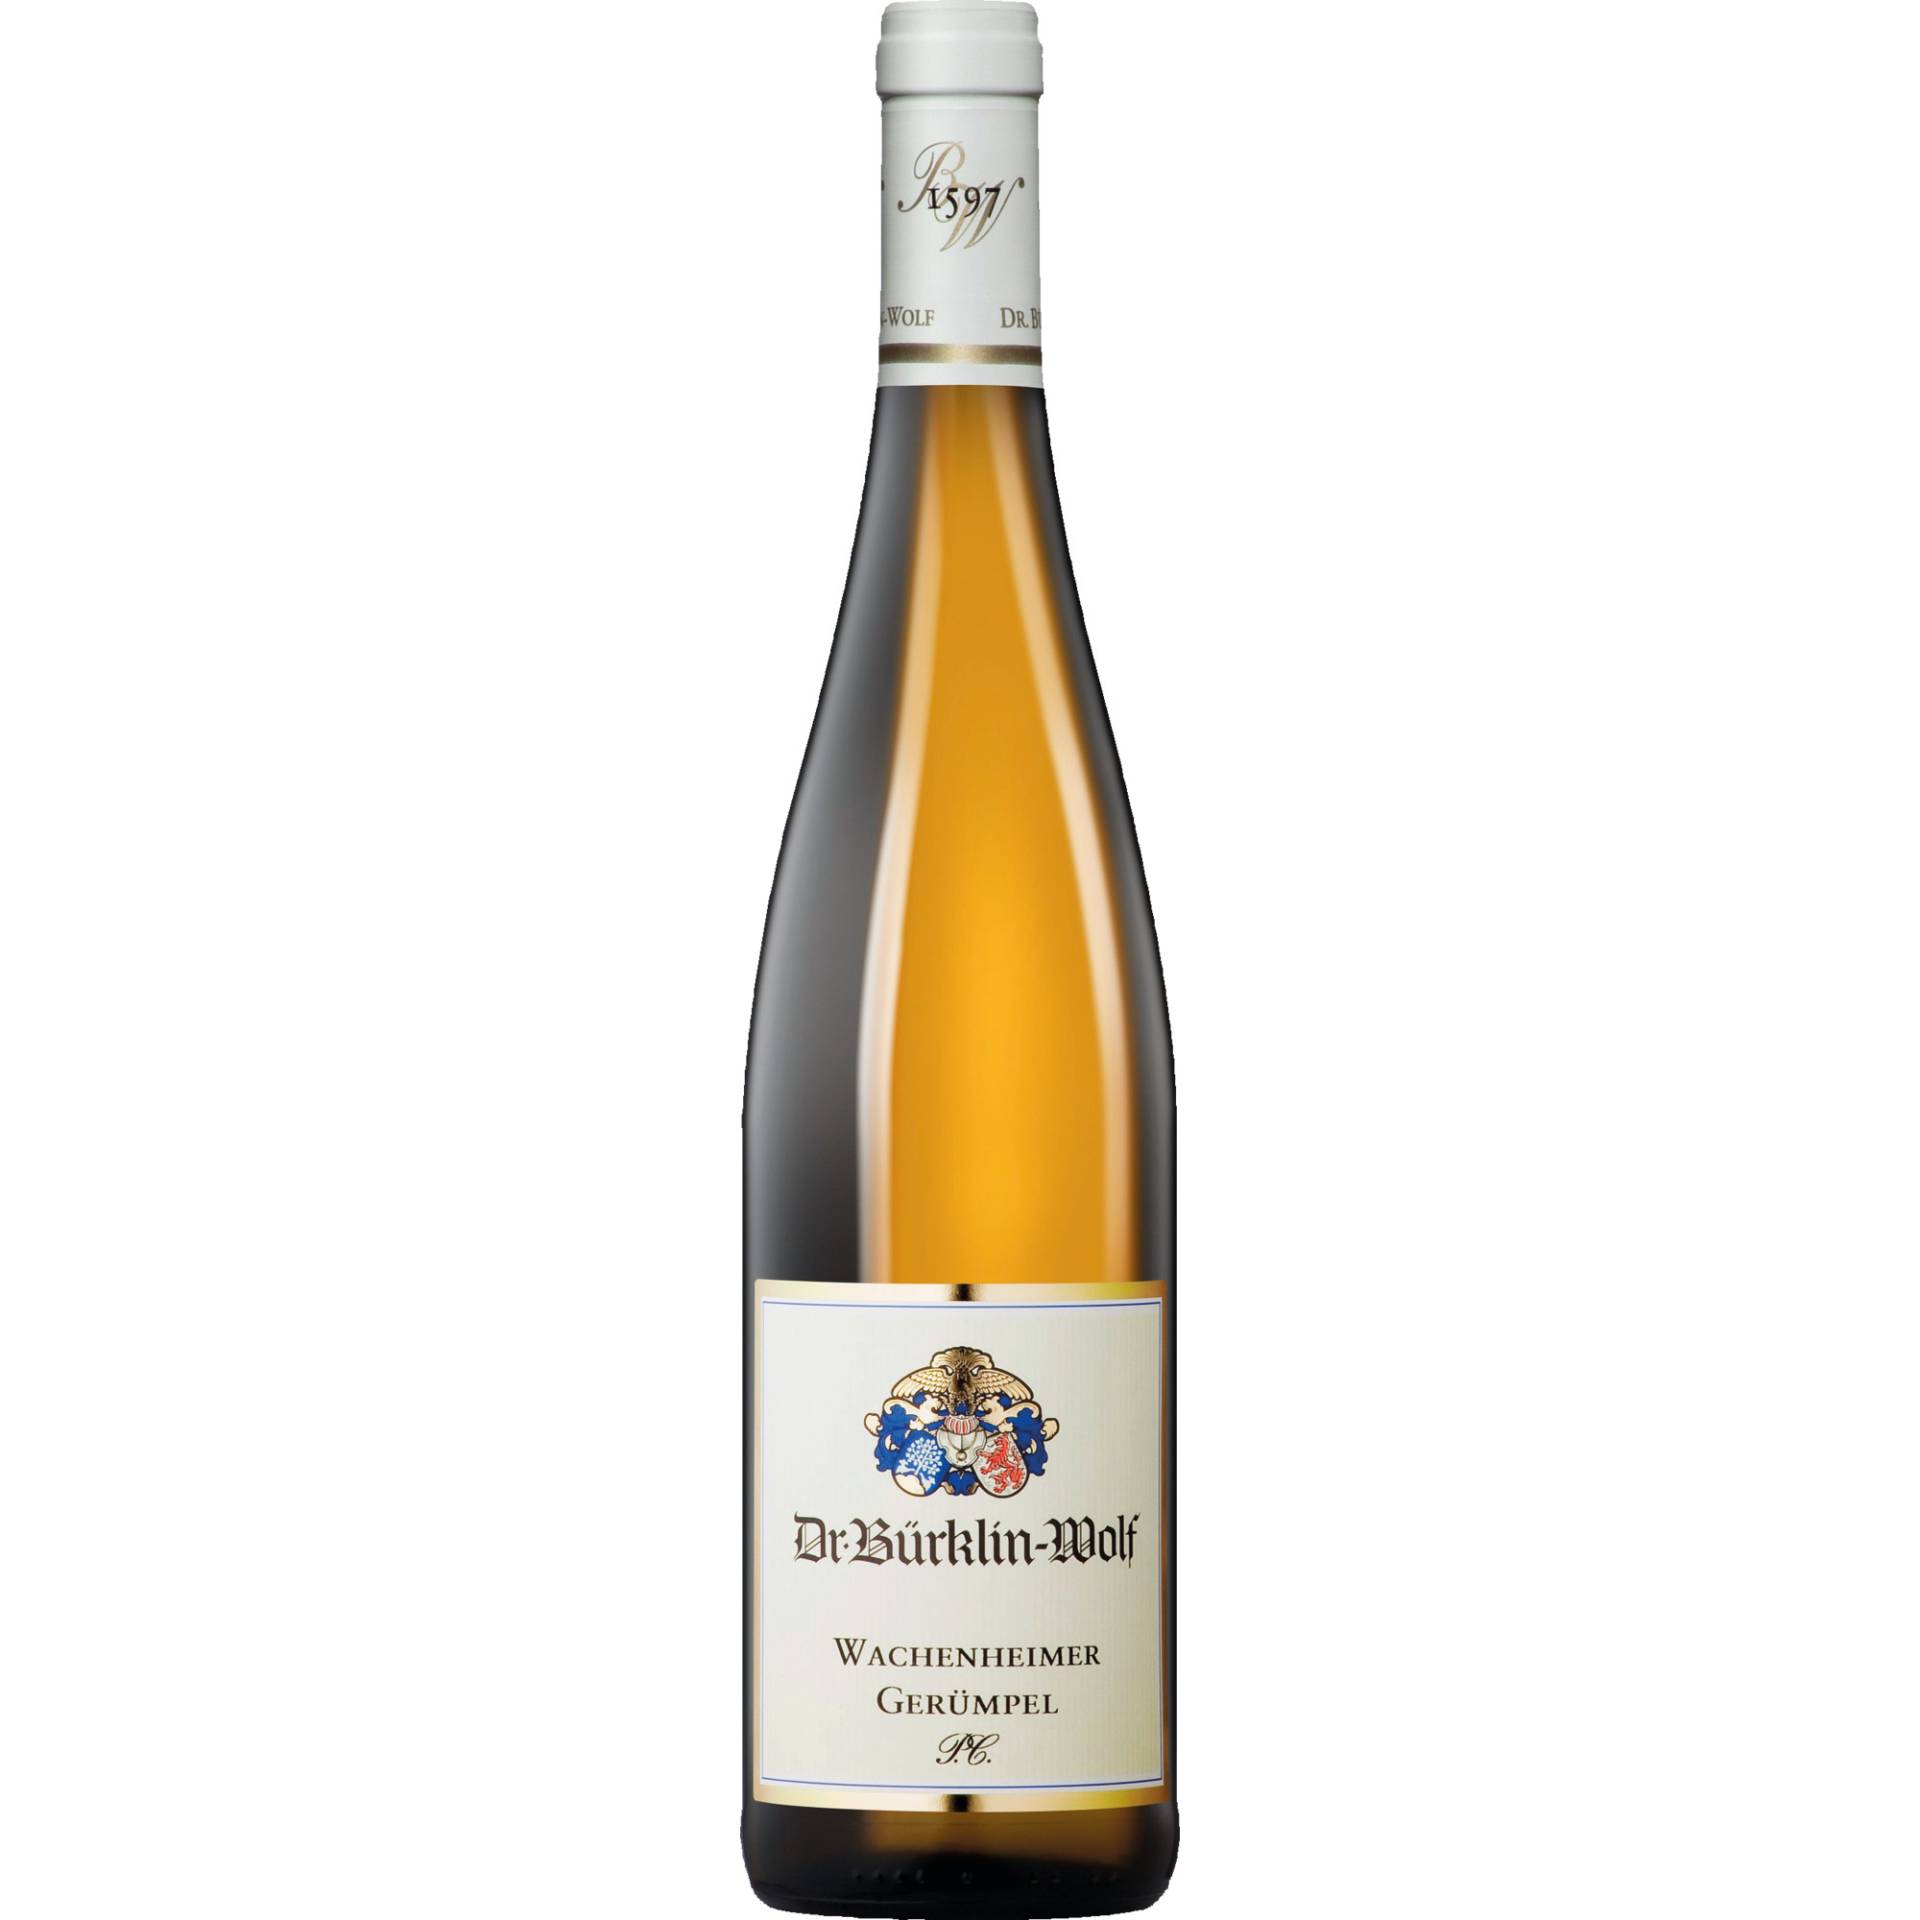 Wachenheimer Gerümpel P.C. Riesling, Trocken, Pfalz, Pfalz, 2022, Weißwein von Weingut Dr. Bürklin-Wolf, D - 67157 Wachenheim